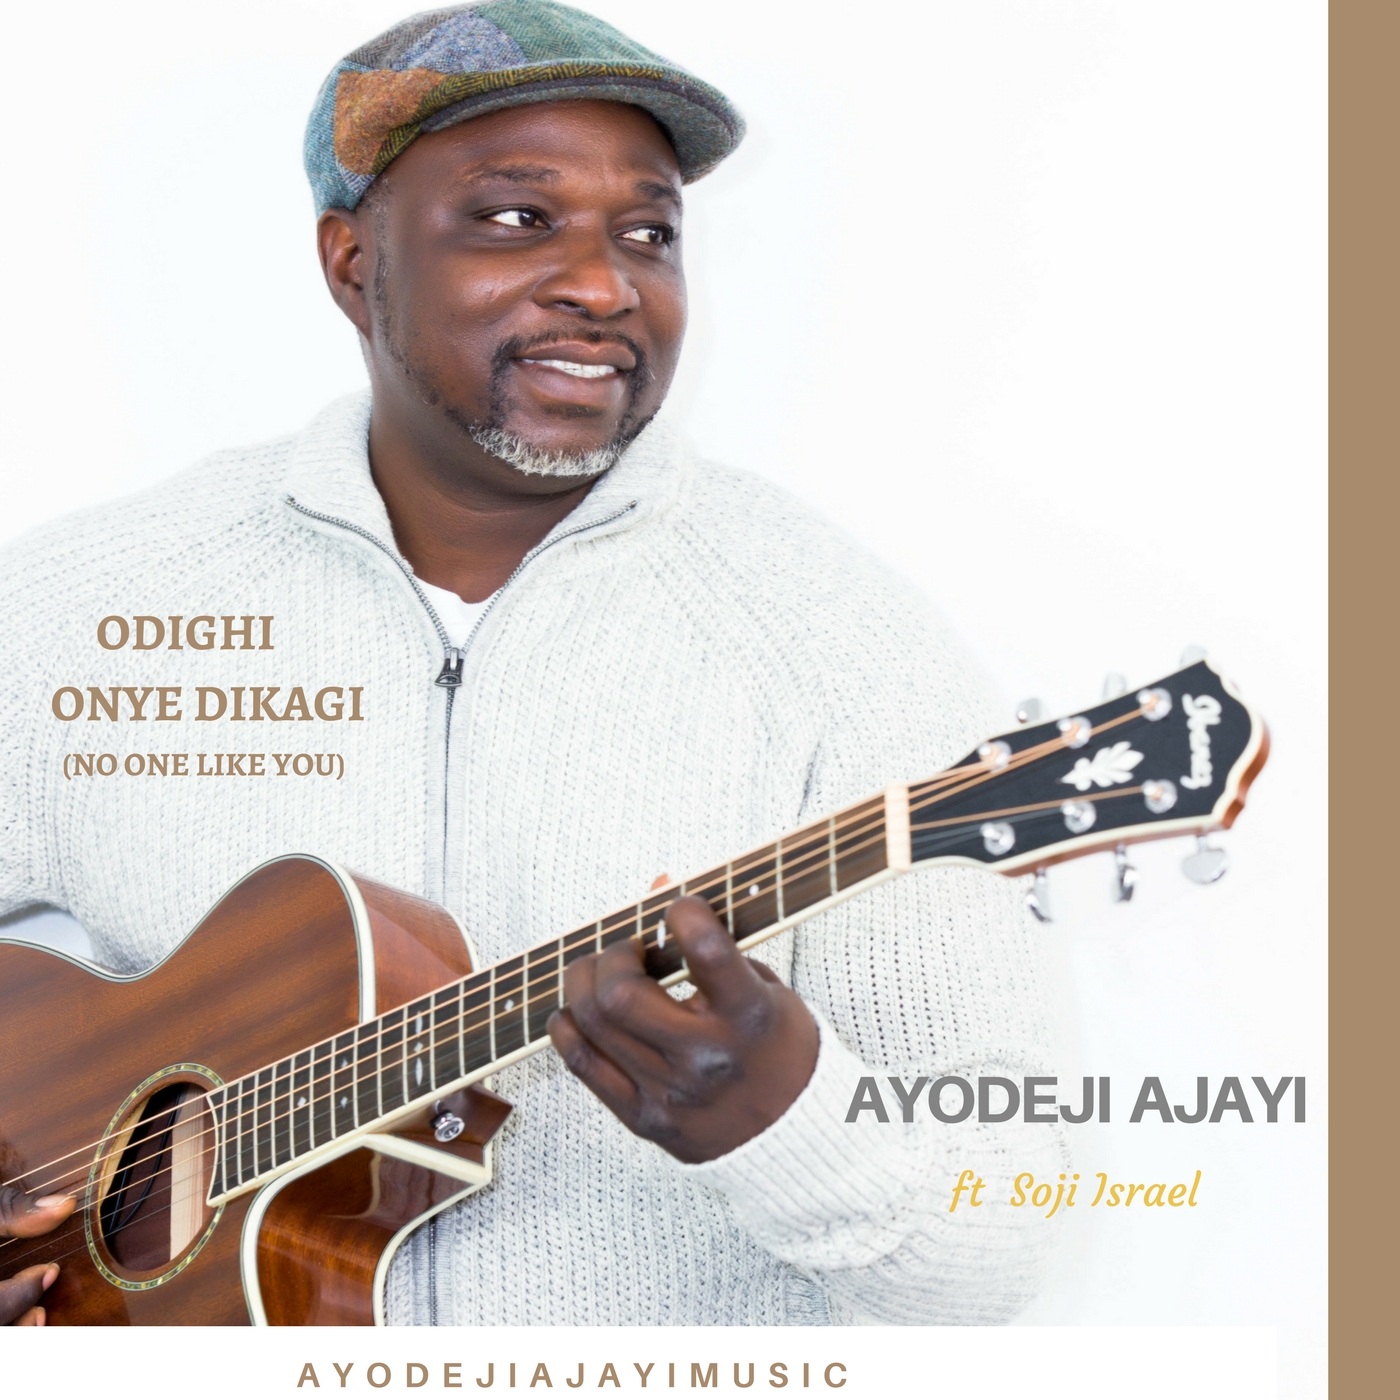 Gospel: Ayodeji Ajayi- Odighi Onye Dikagi (No One Like You) [feat. SOJI ISRAEL]